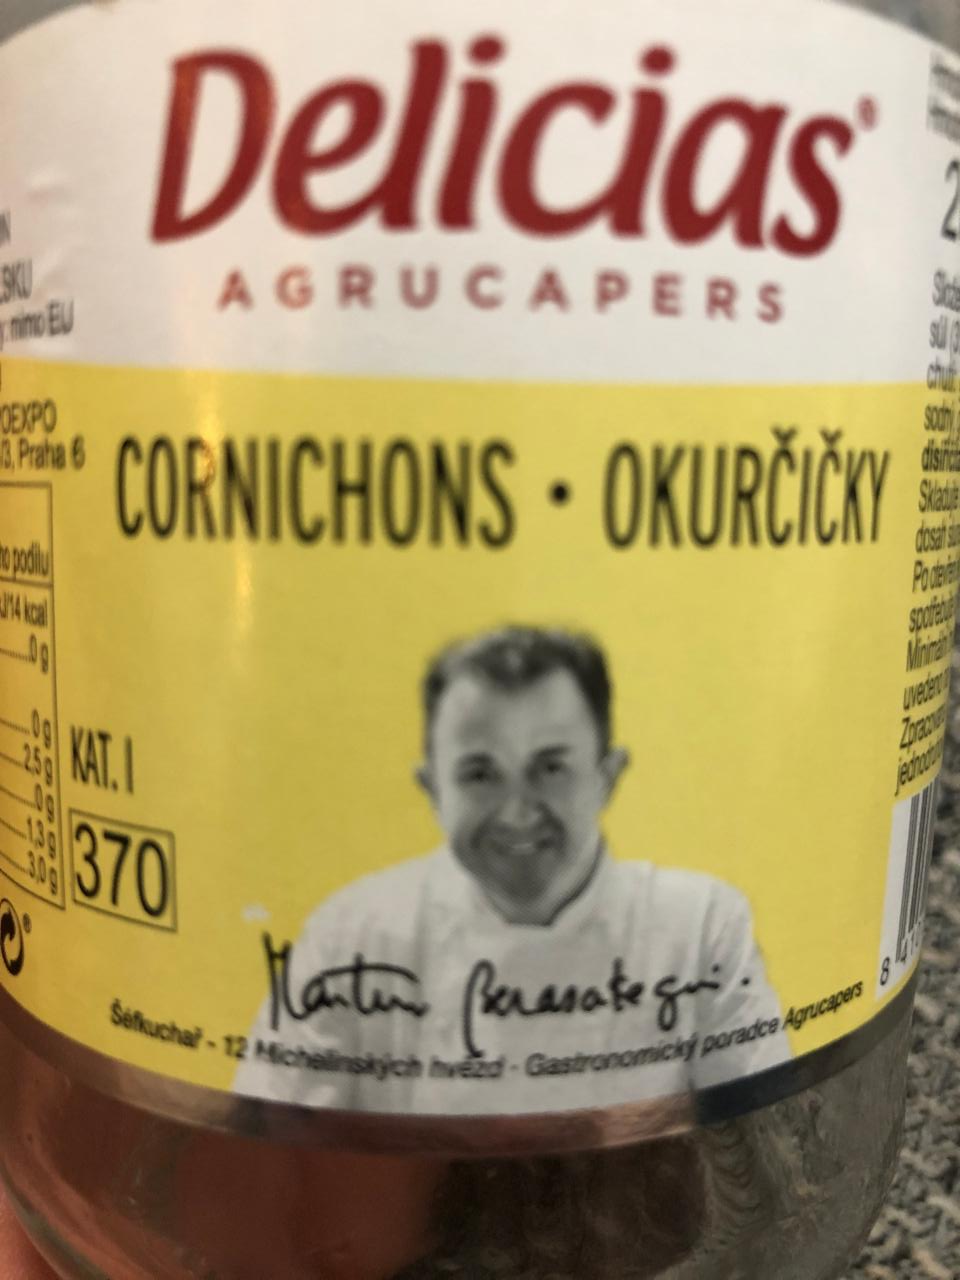 Fotografie - Cornichons okurčičky nakládané Delicias